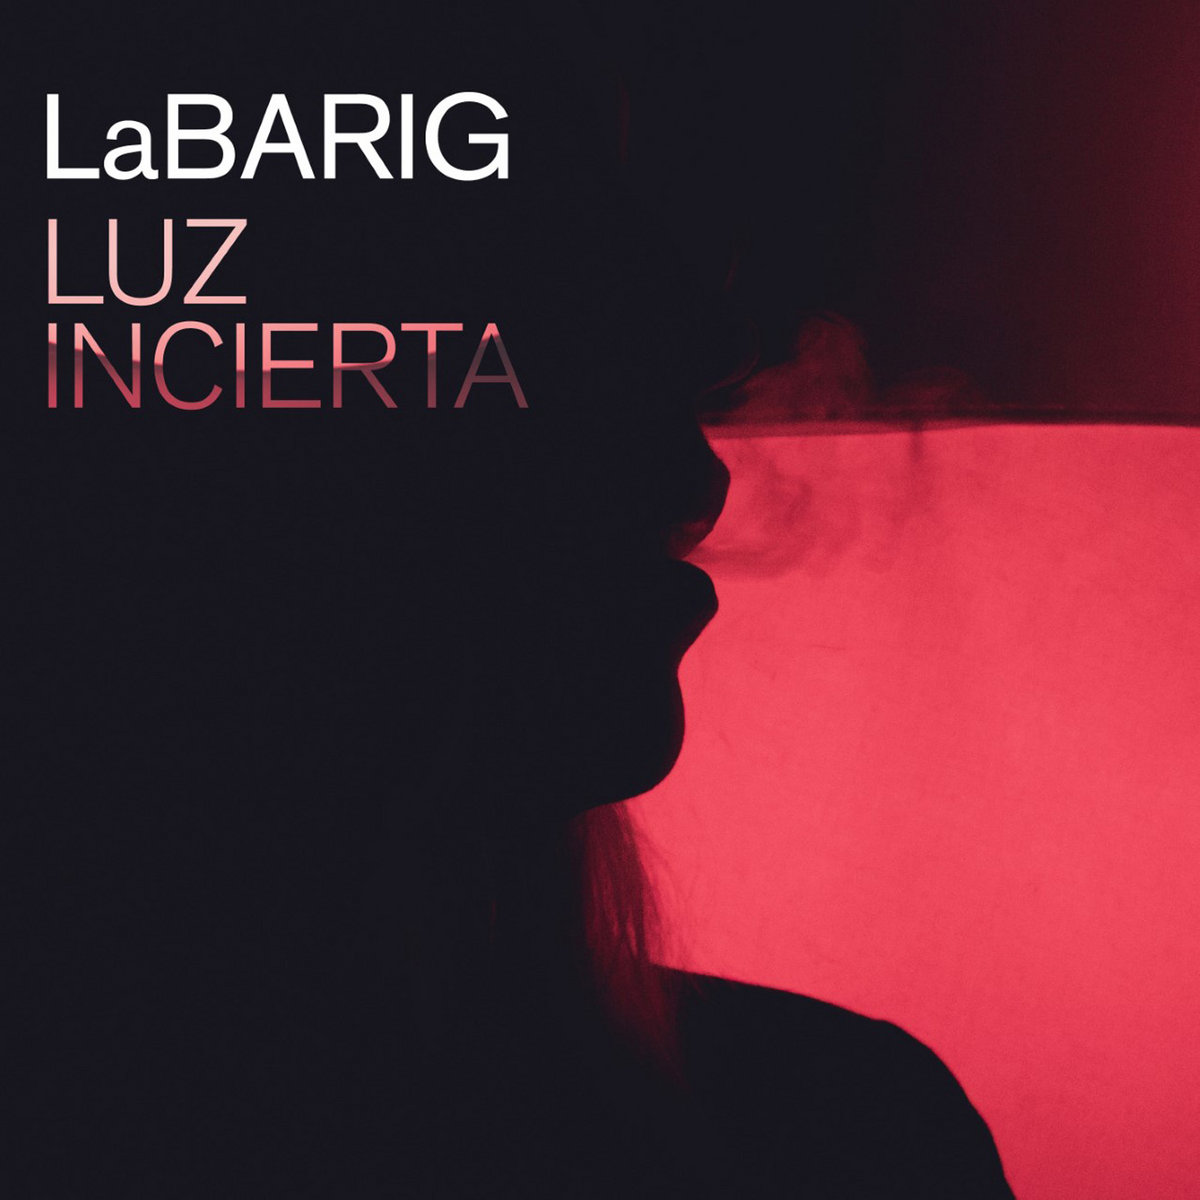 Labarig_luz_incierta